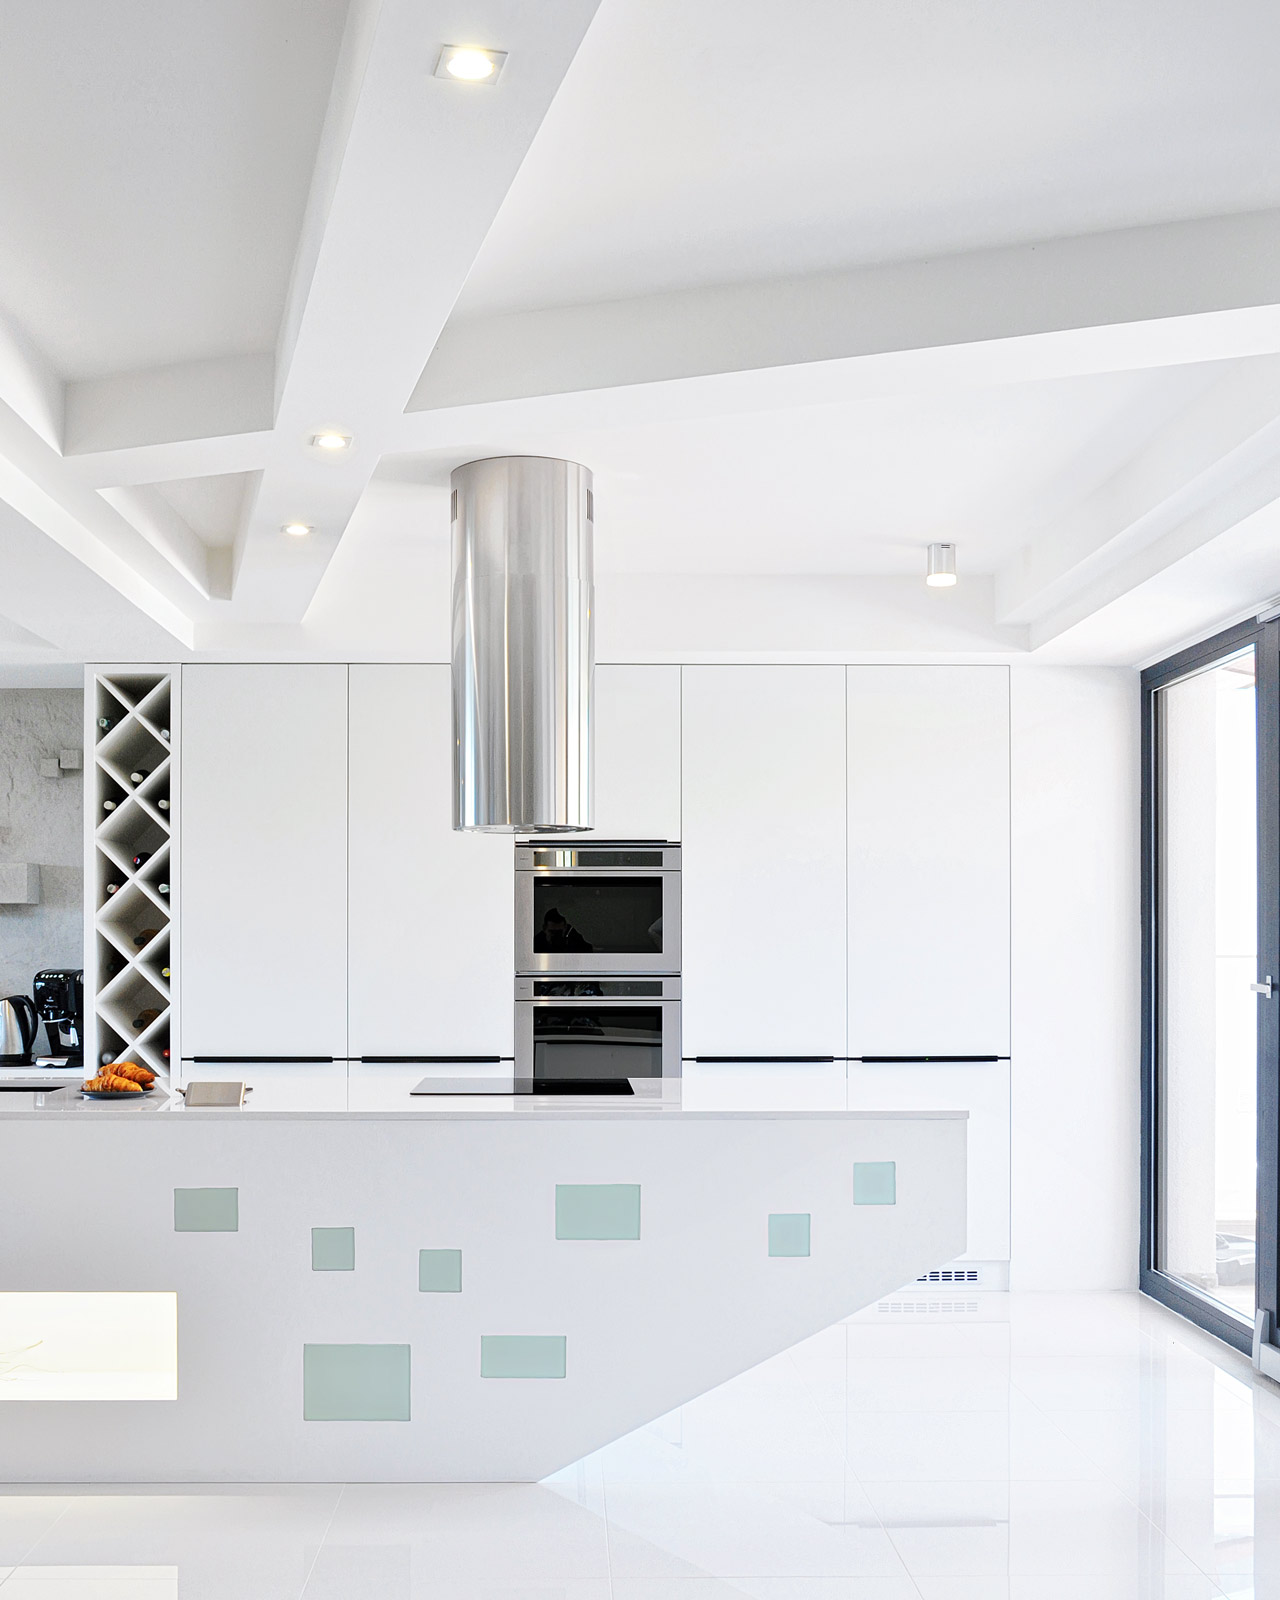 Kuchynská linka v tvare lode, moderná kuchyňa, svetlý interiér, sadrokartónový strop